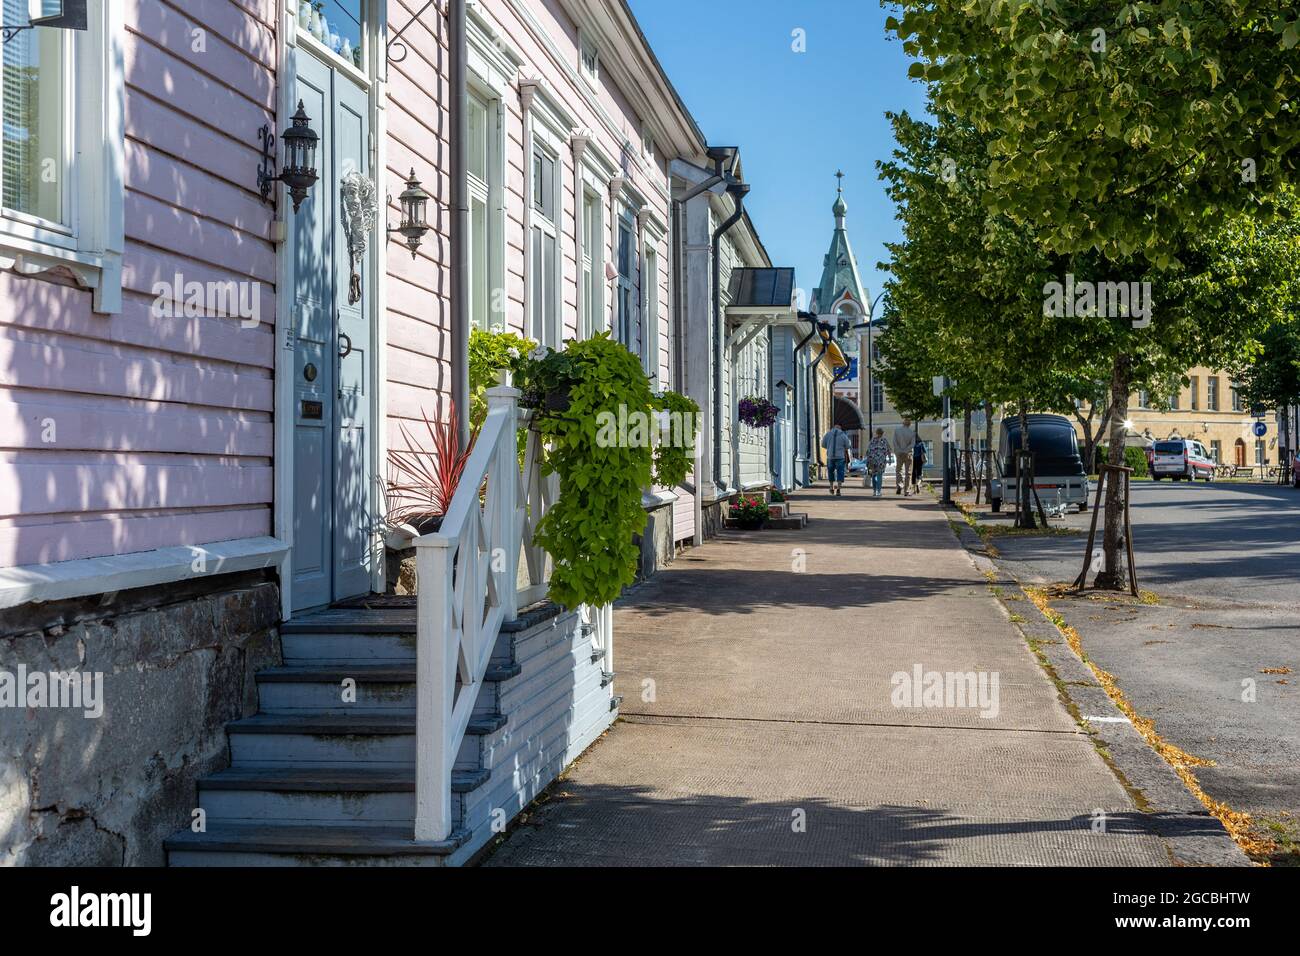 HAMINA, FINNLAND - 04-08-2021: Holzhäuser in den Straßen der Altstadt von Hamina, Finnland im Sommer. Stockfoto